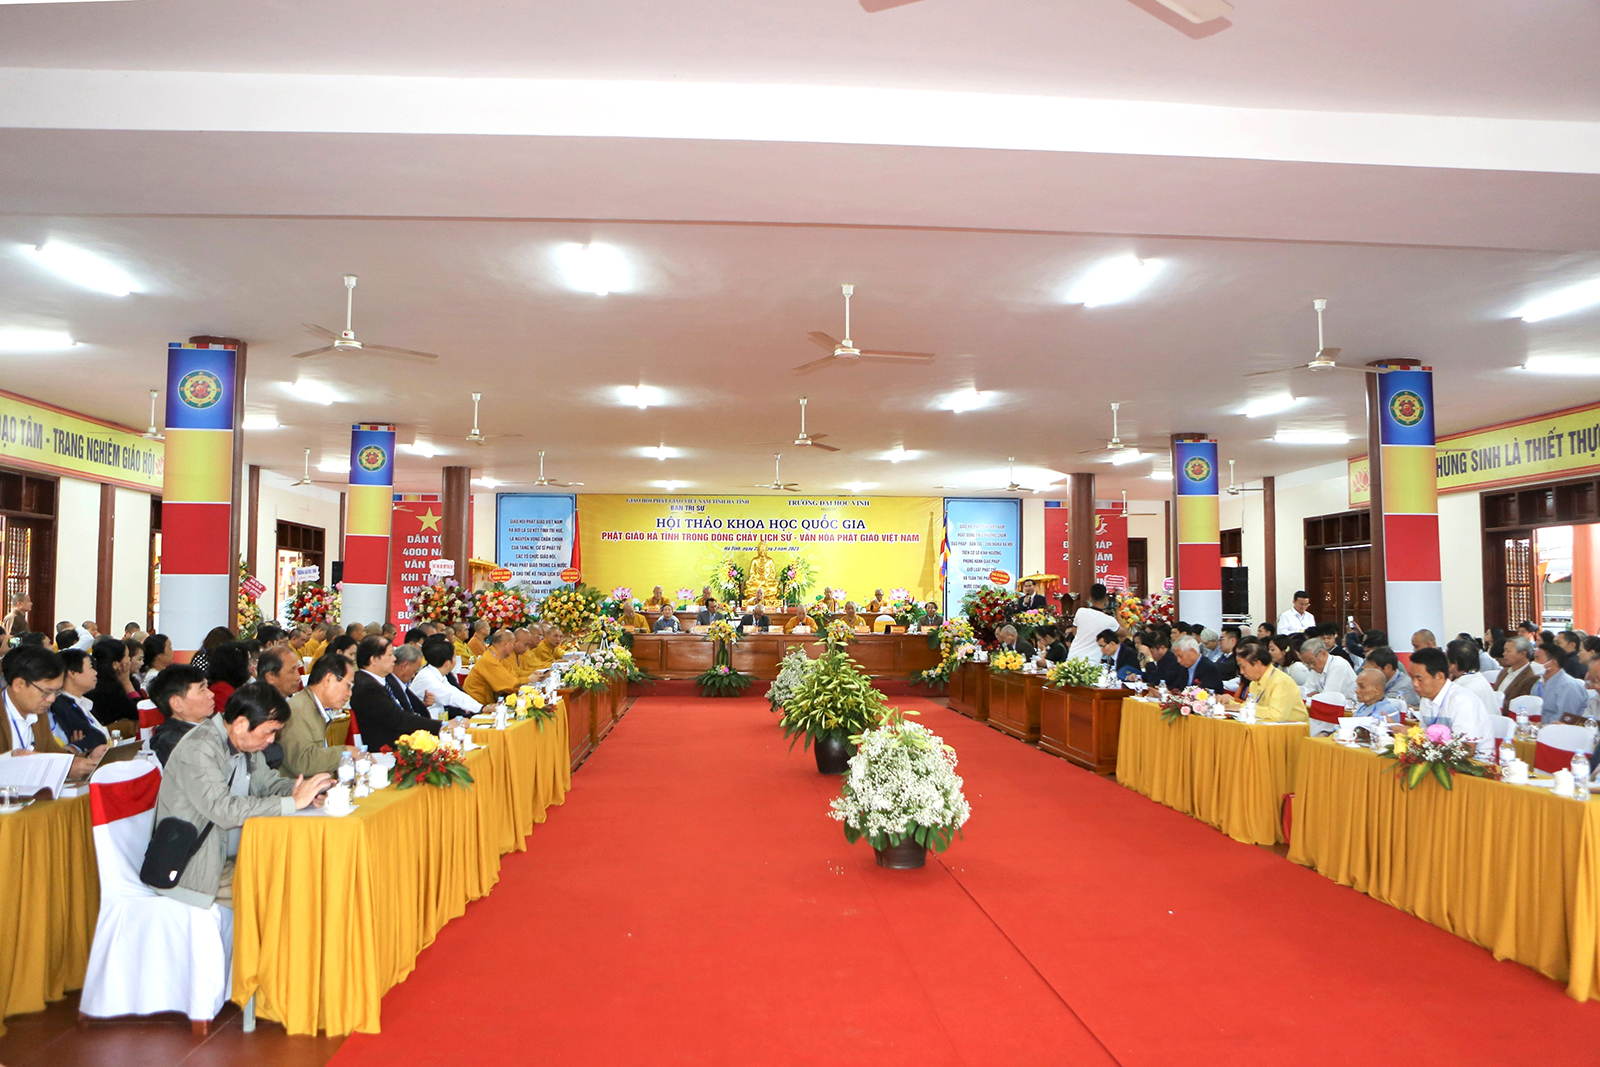 Tổ chức Hội thảo khoa học quốc gia “Phật giáo Hà Tĩnh trong dòng chảy lịch sử - văn hóa Phật giáo Việt Nam”